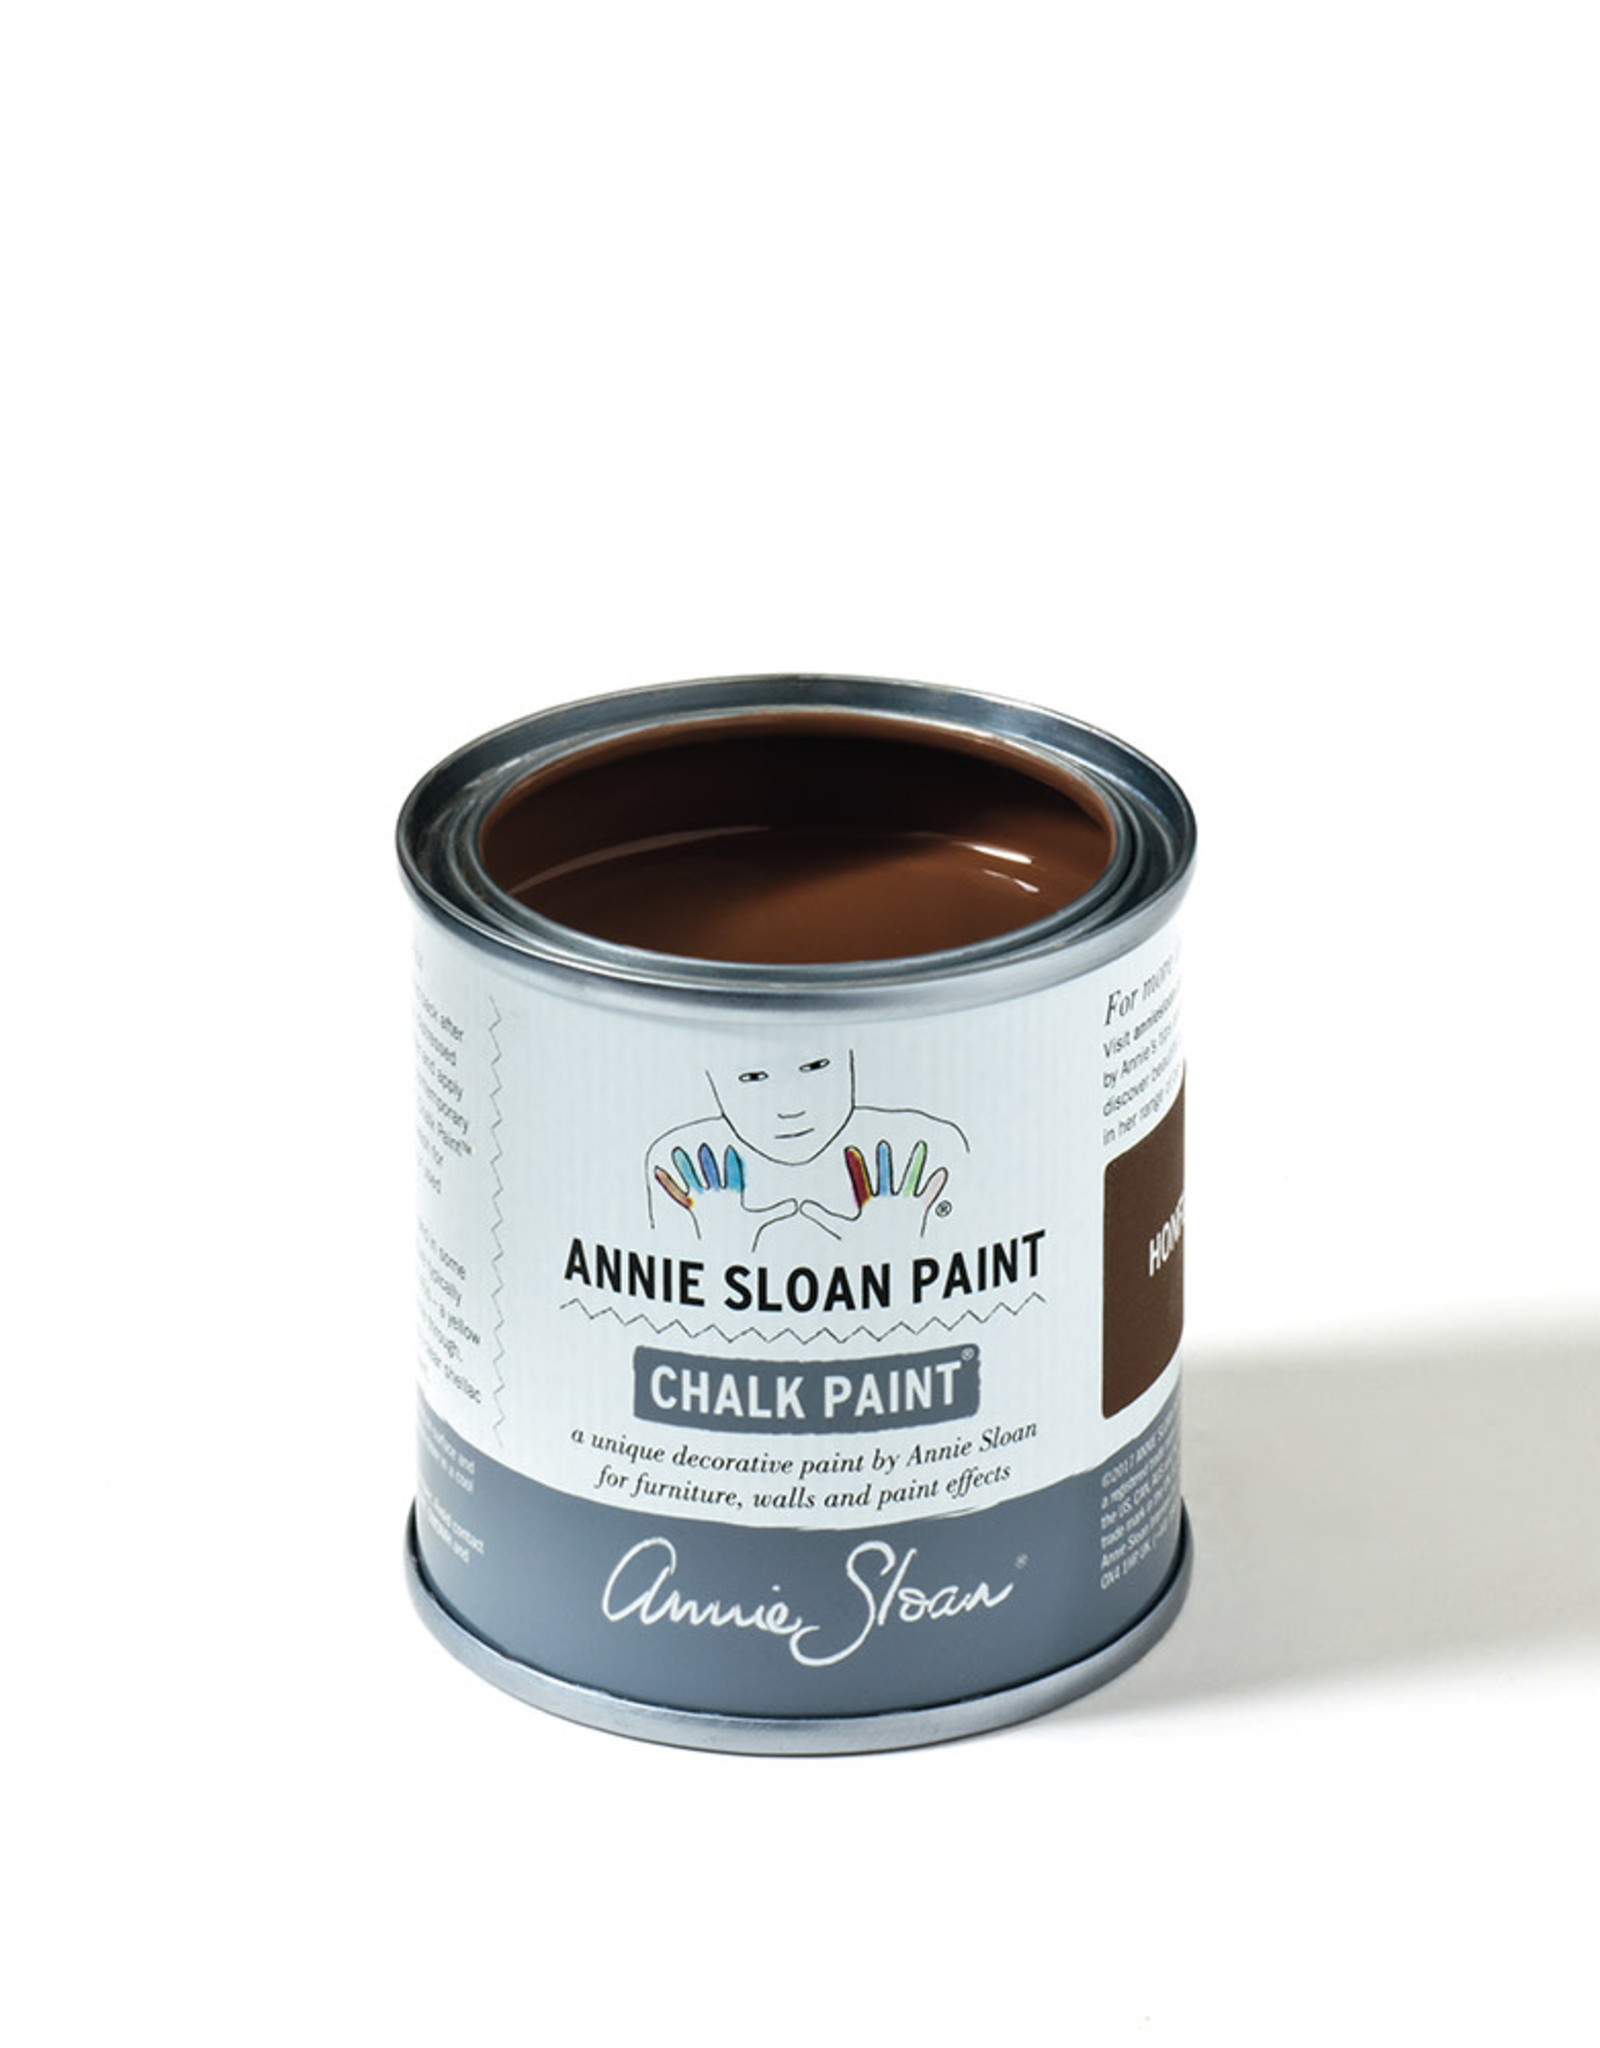 Hansell & Halkett Chalk Paint® by Annie Sloan Honfleur 120ml